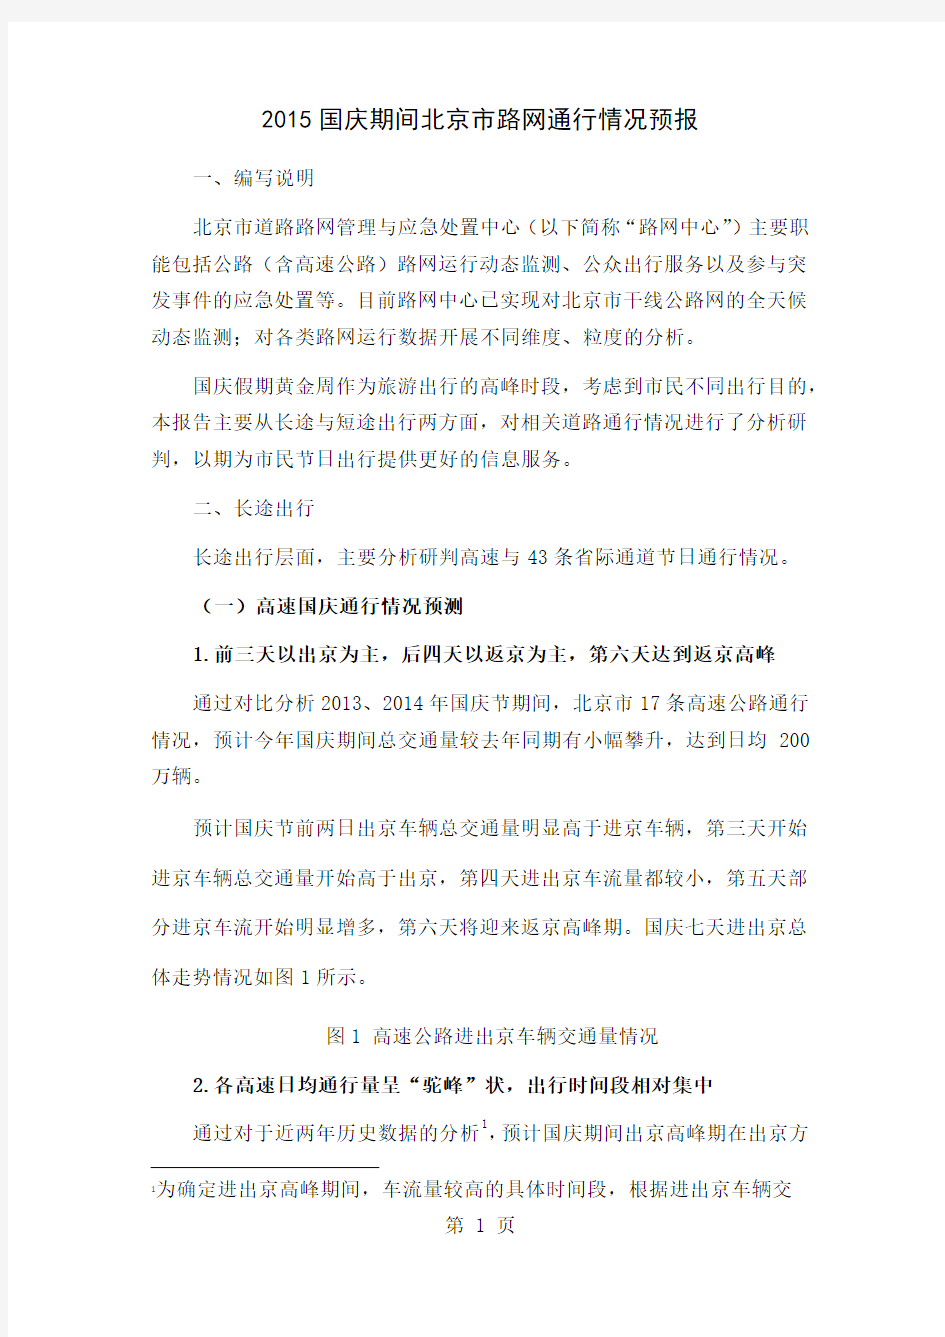 2019国庆期间北京市路网通行情况分析报告 (3)10页